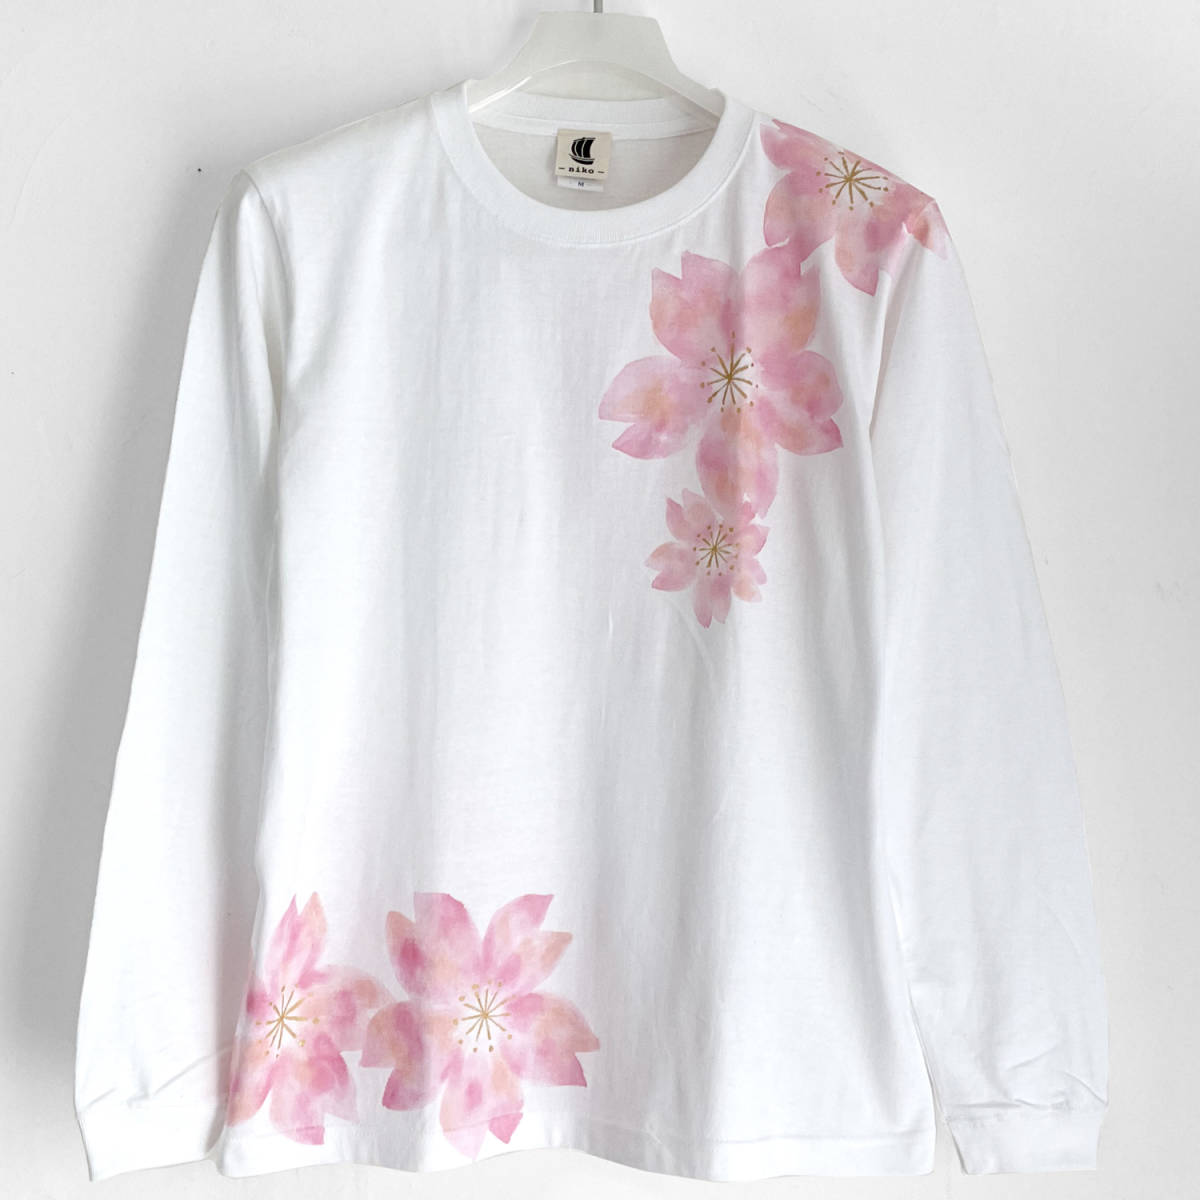 T-Shirt mit tanzendem Kirschblütenmuster, Weiß, Größe S, Handgezeichnetes Langarm-T-Shirt mit gerippten Ärmeln, Langes T-Shirt, Florales japanisches Muster, Rosa, T-Shirts, Lange Ärmel, Kleine Größe